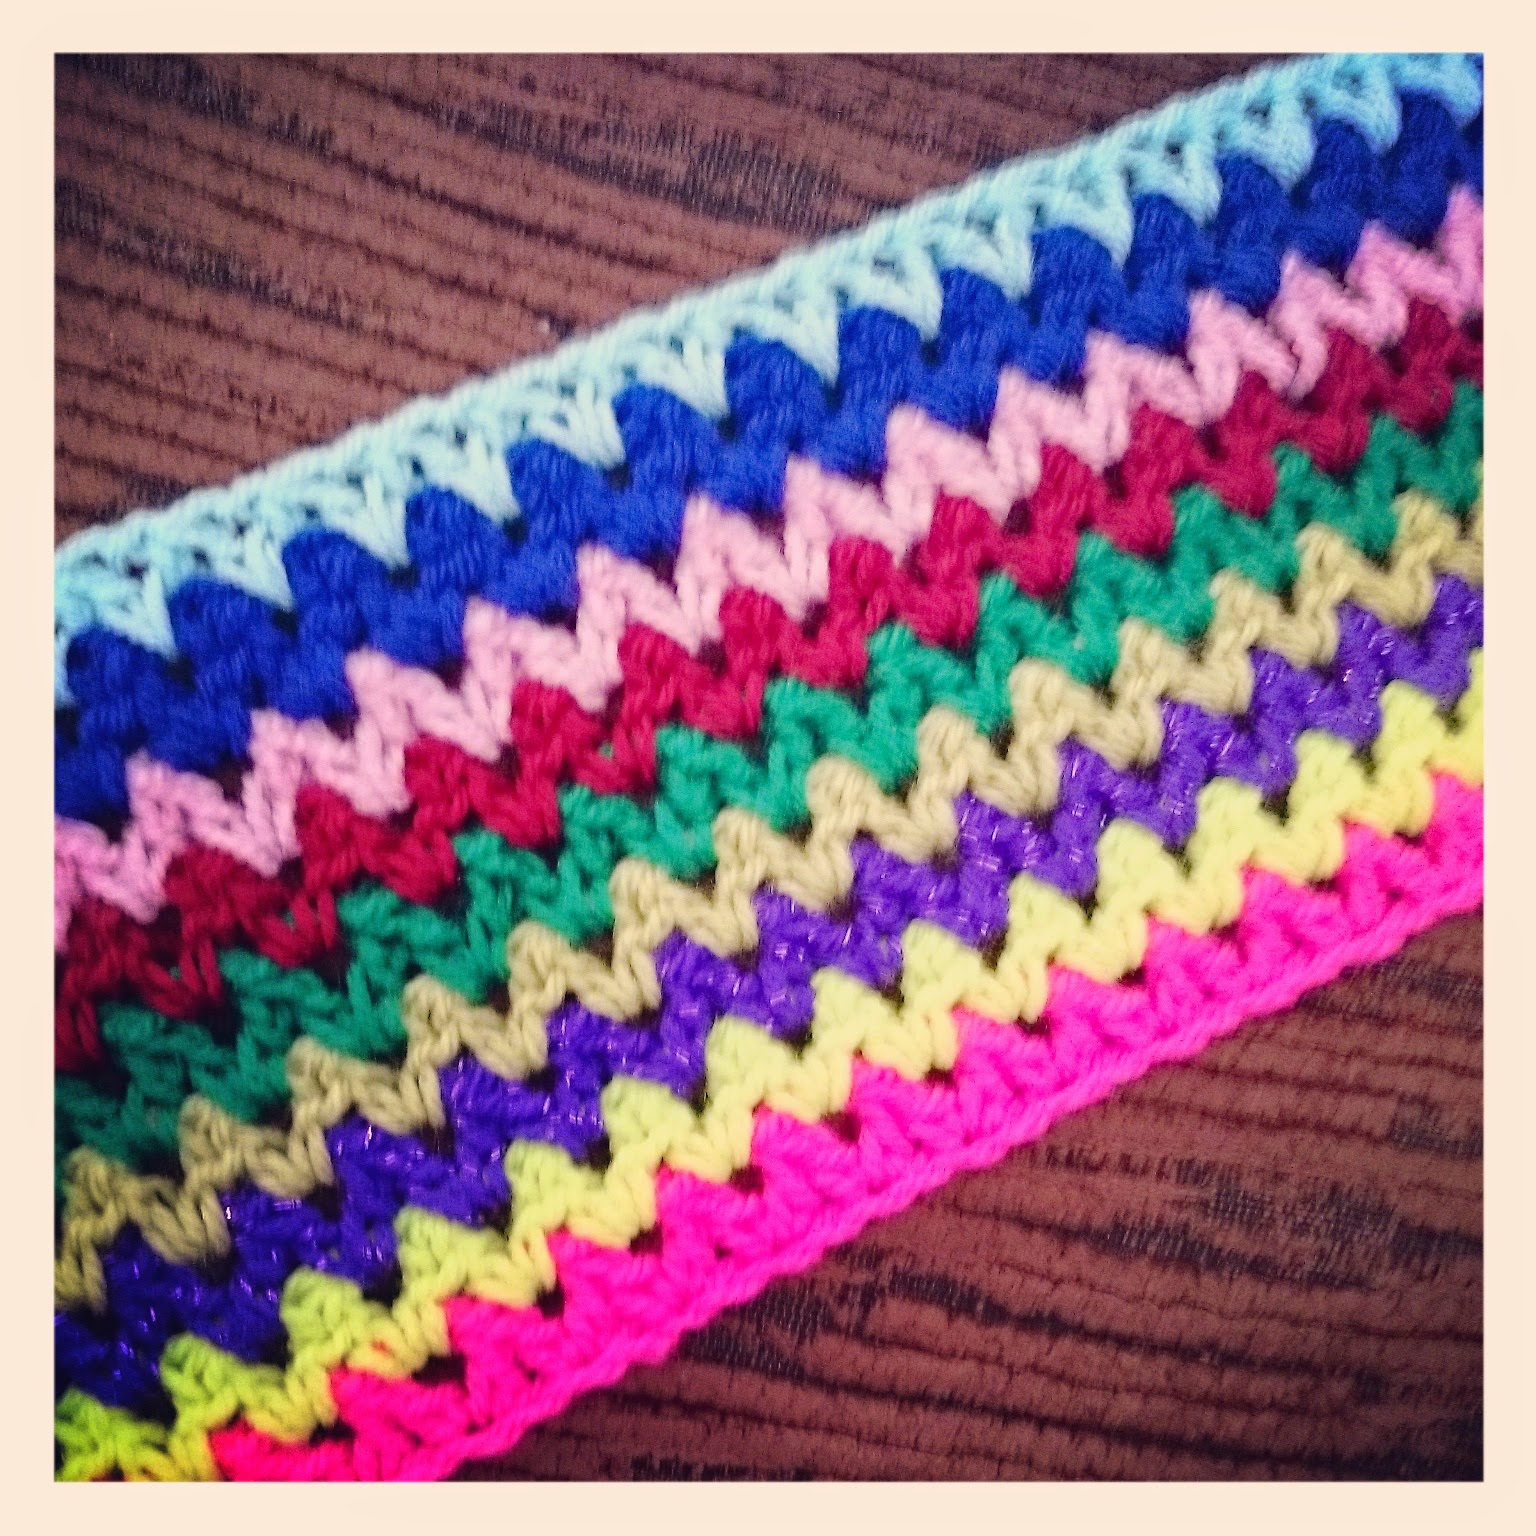 Robin Sparkles Blog: Crochet V Stitch Travel Blanket - My latest